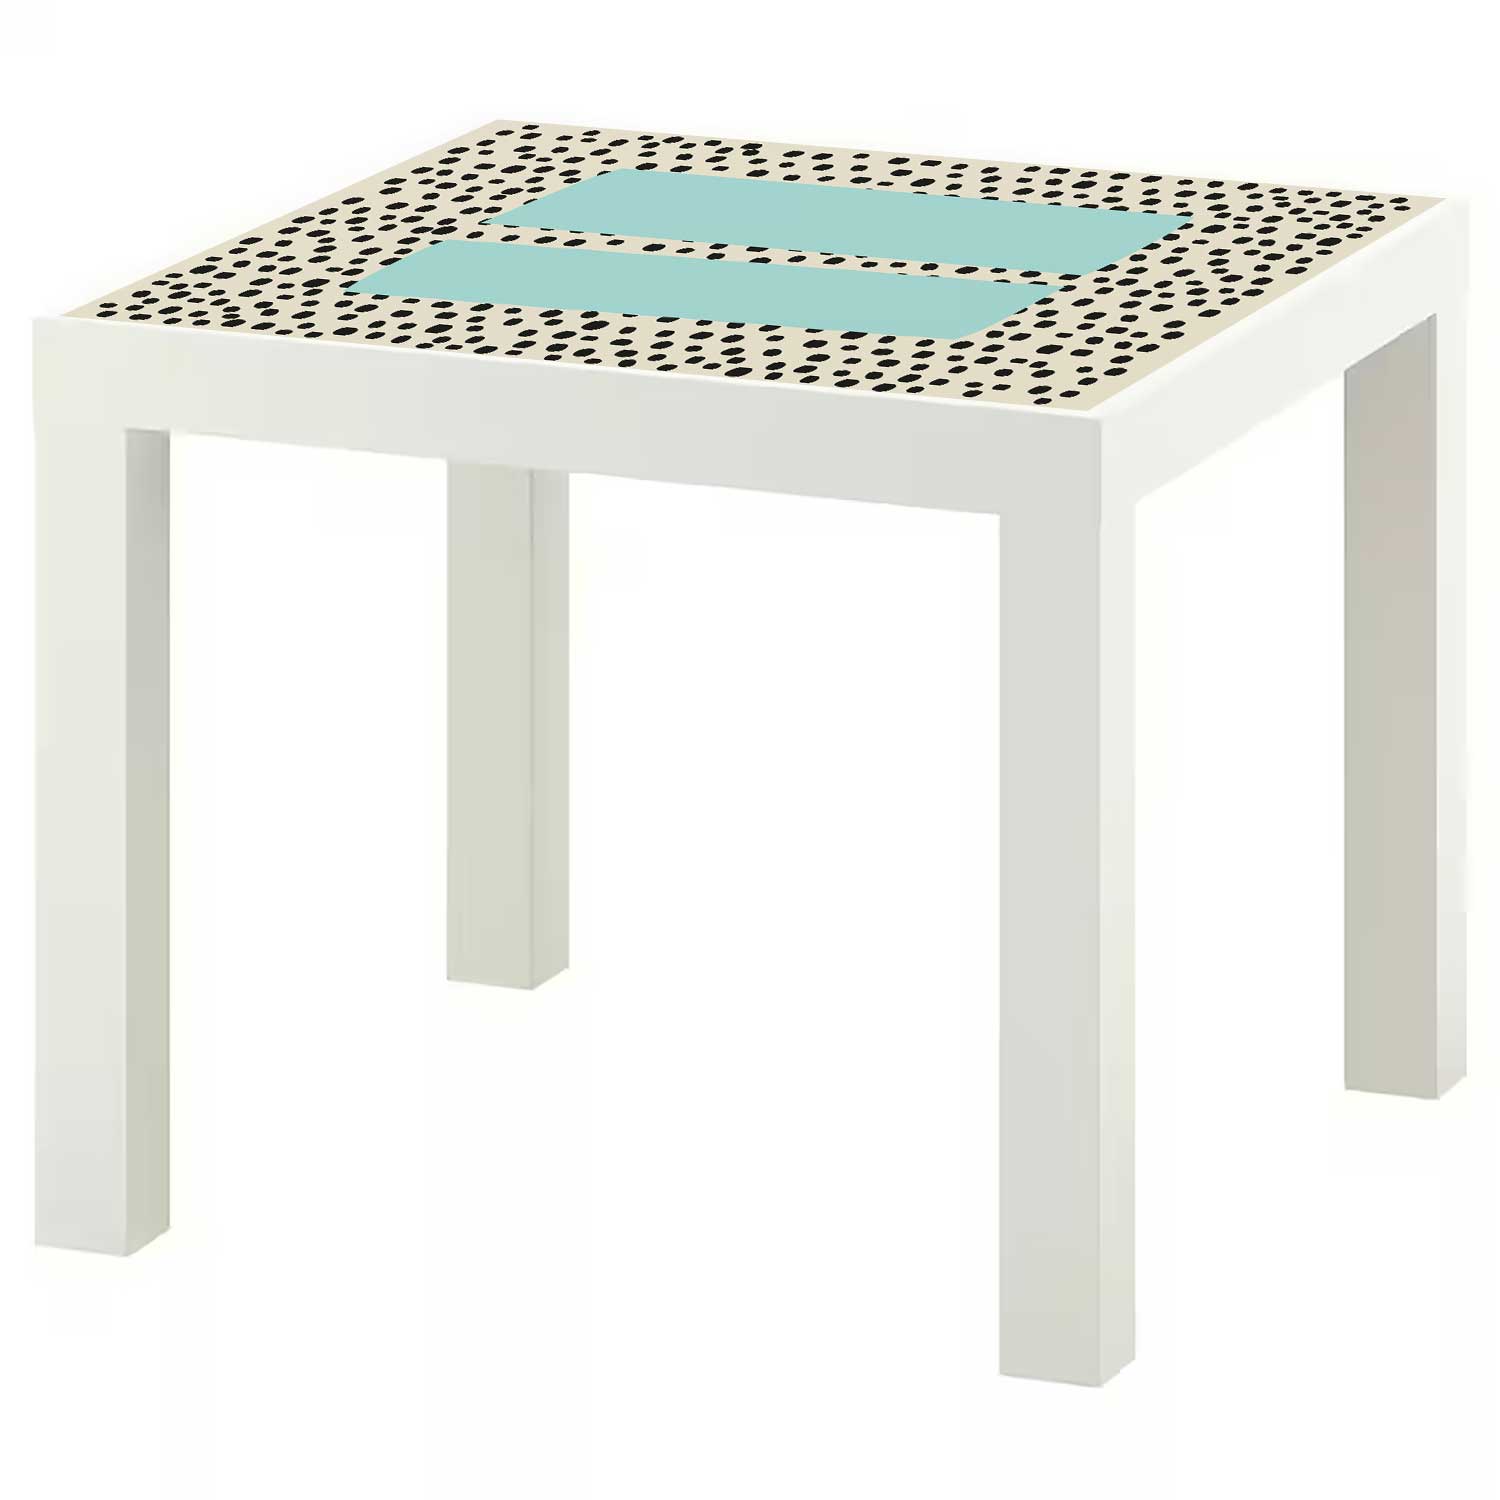 Möbelfolie für IKEA Lack Tisch 55x55 cm 'Pünktchen'